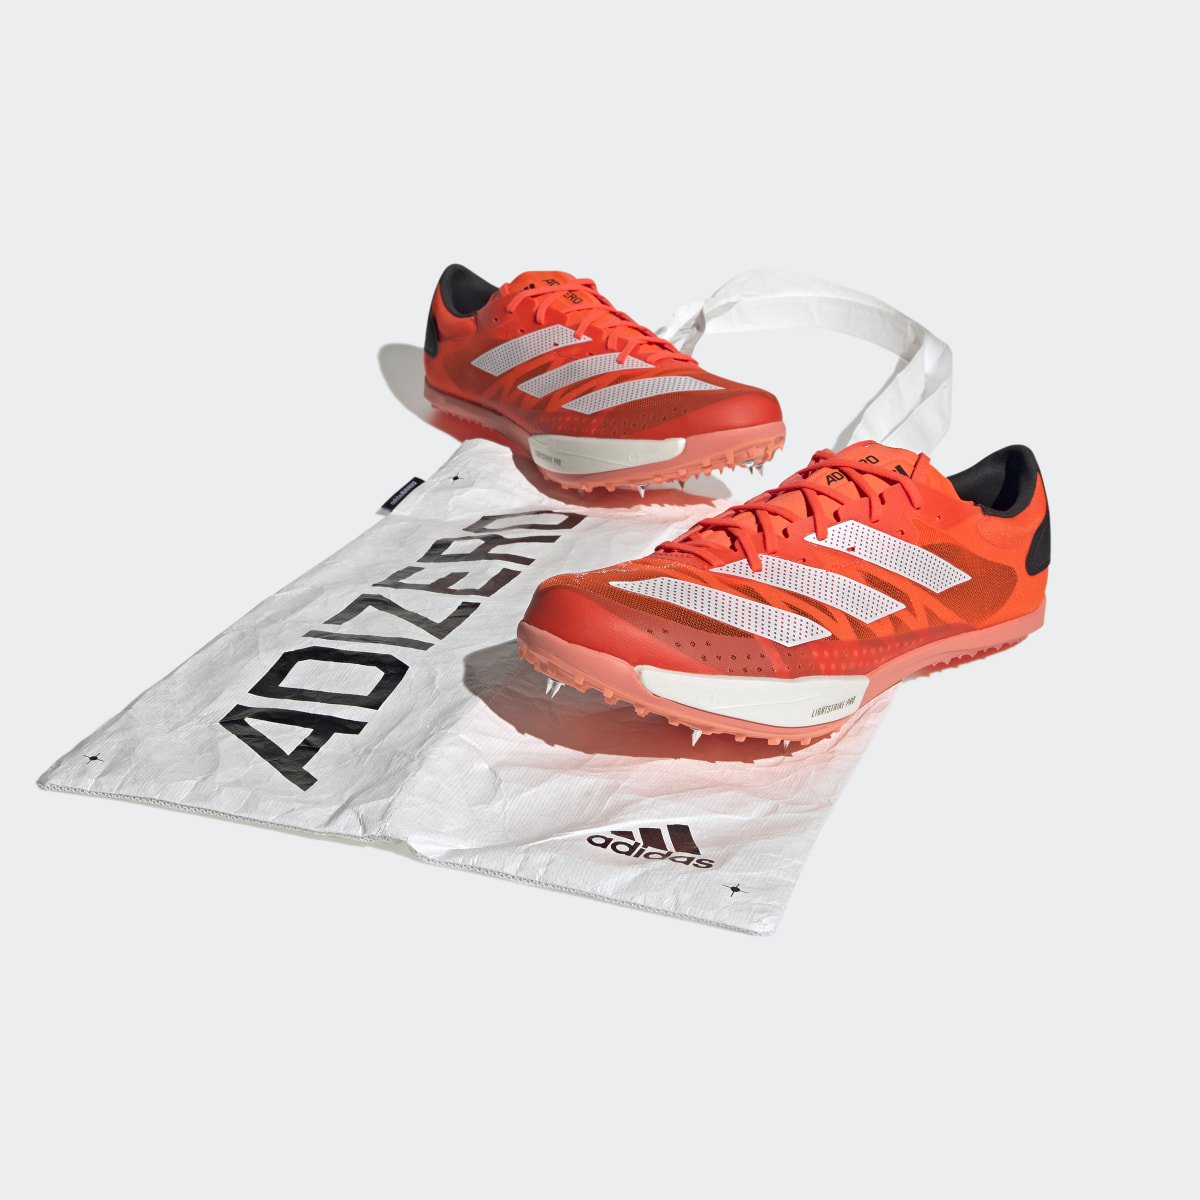 Adidas Adizero Ambition Shoes. 4